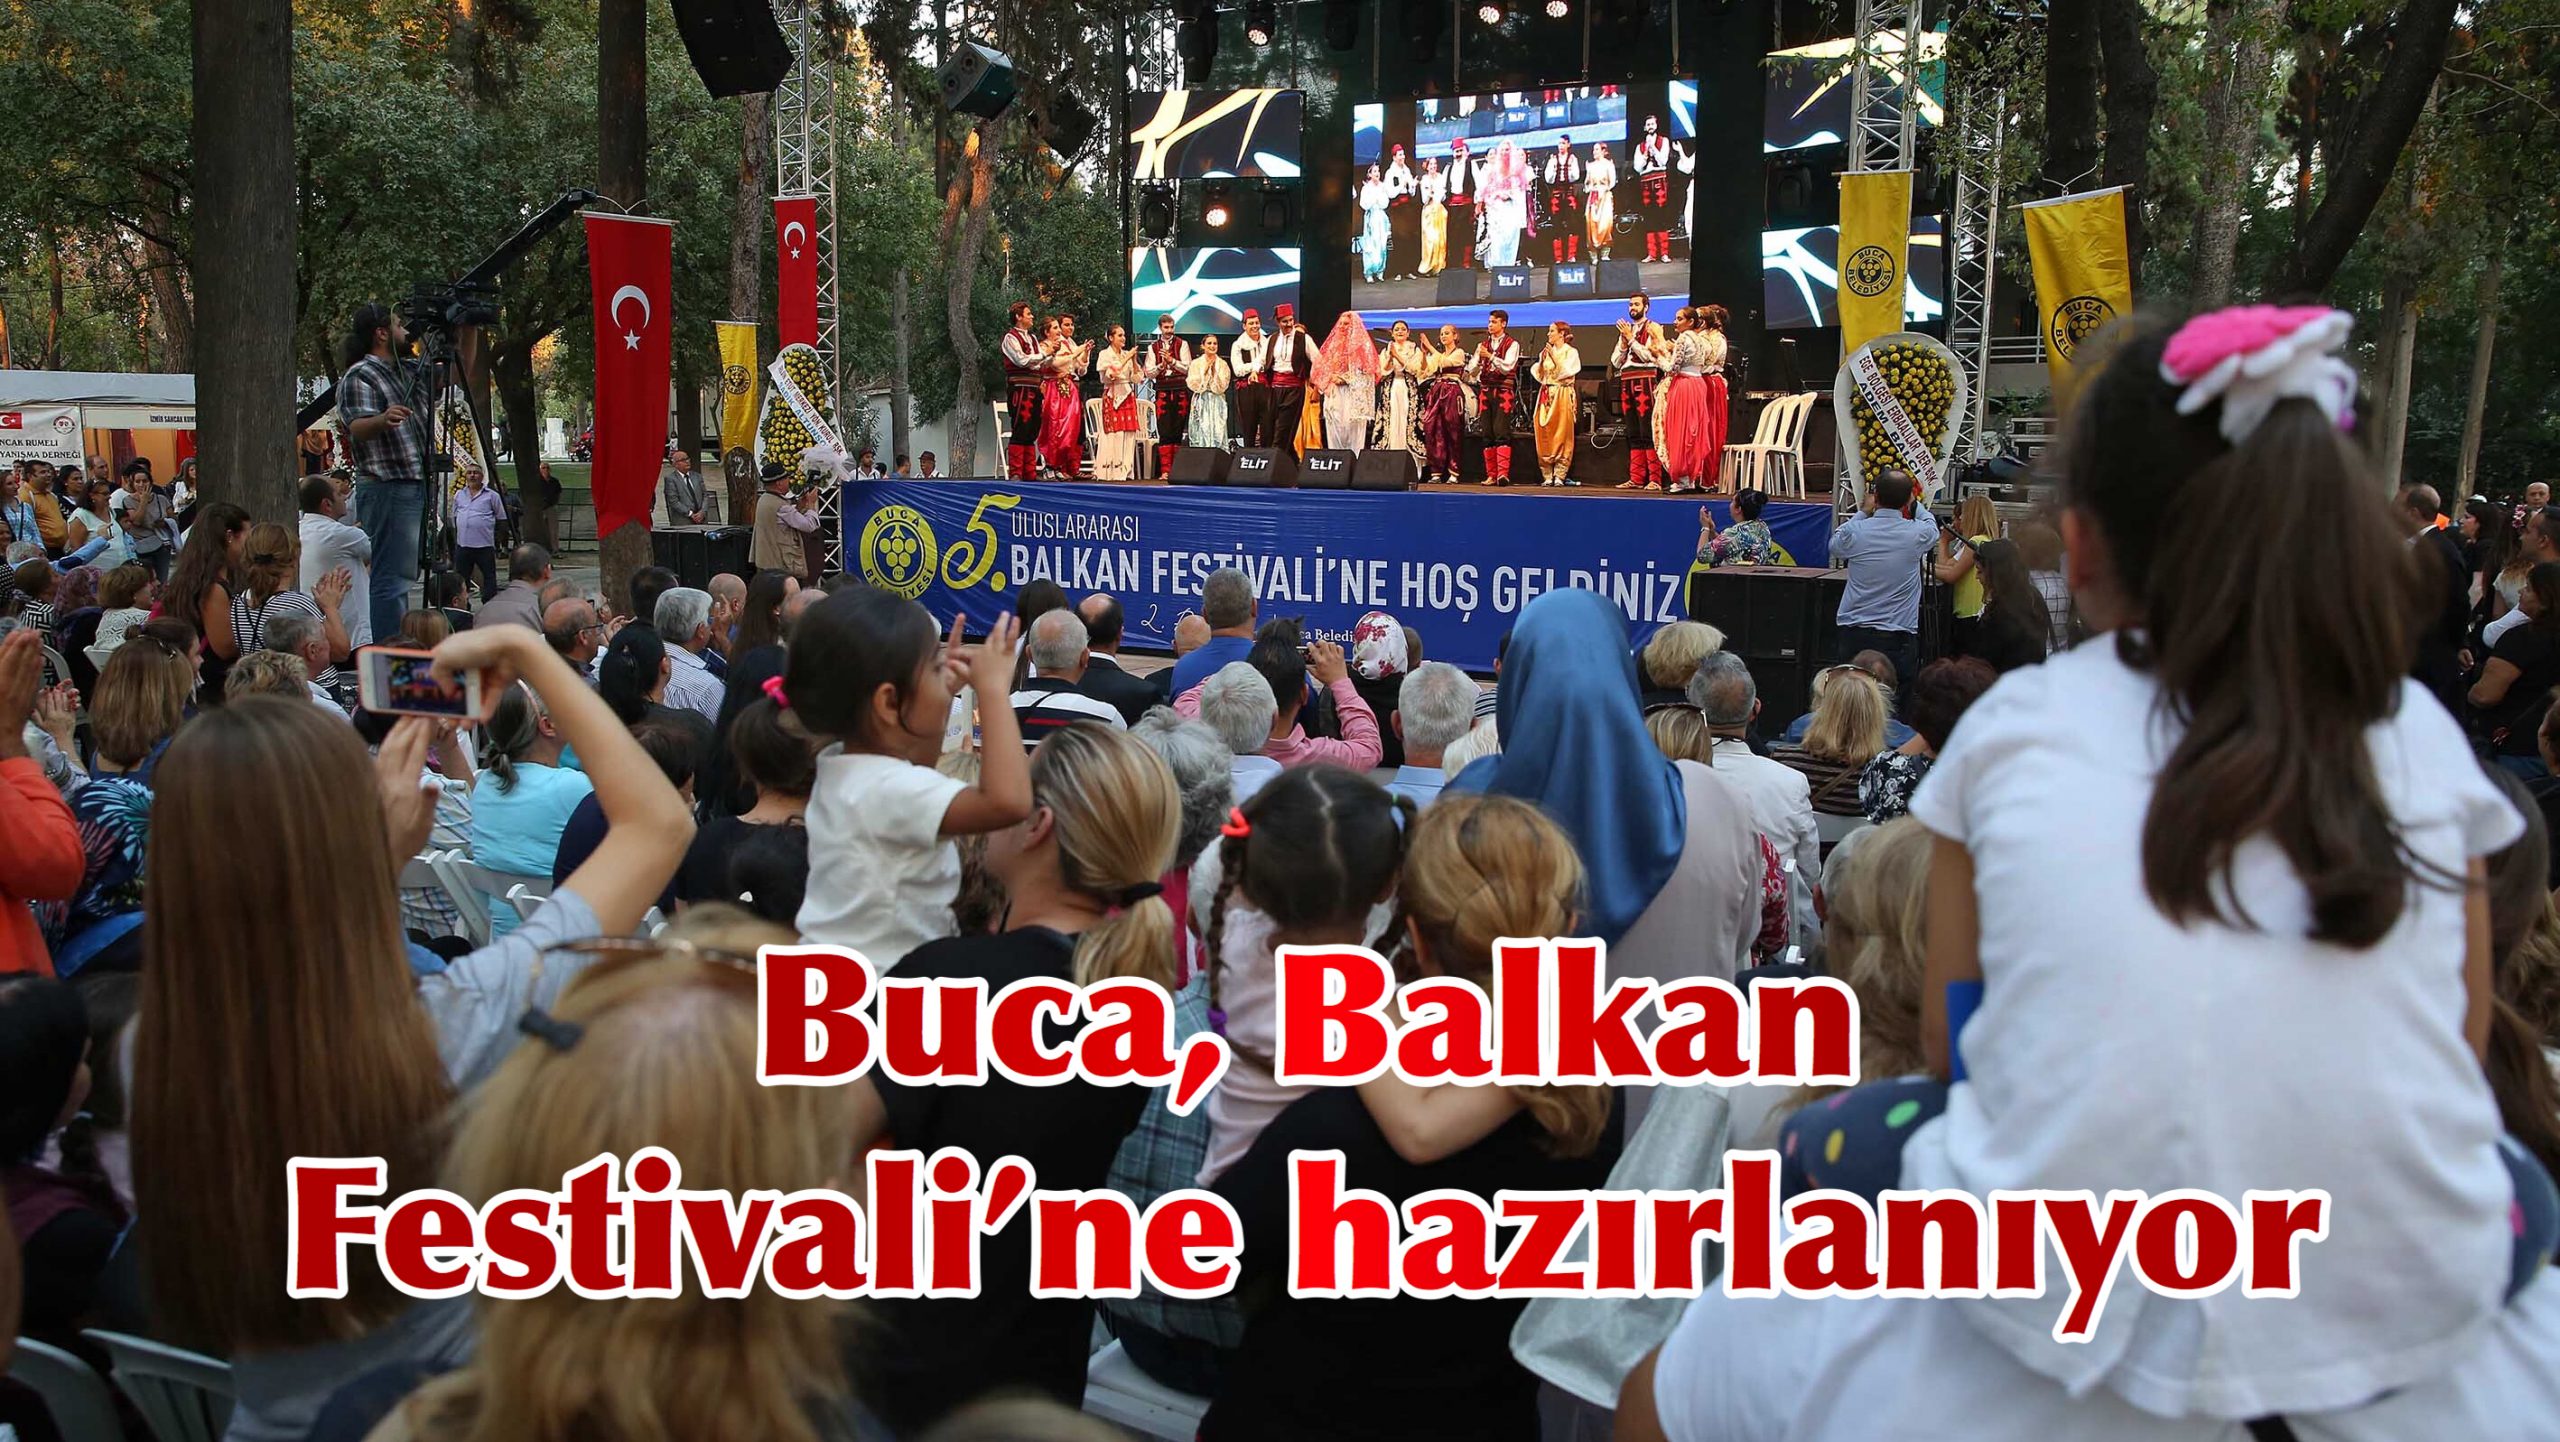 Buca Balkan Festivali’ne hazırlanıyor